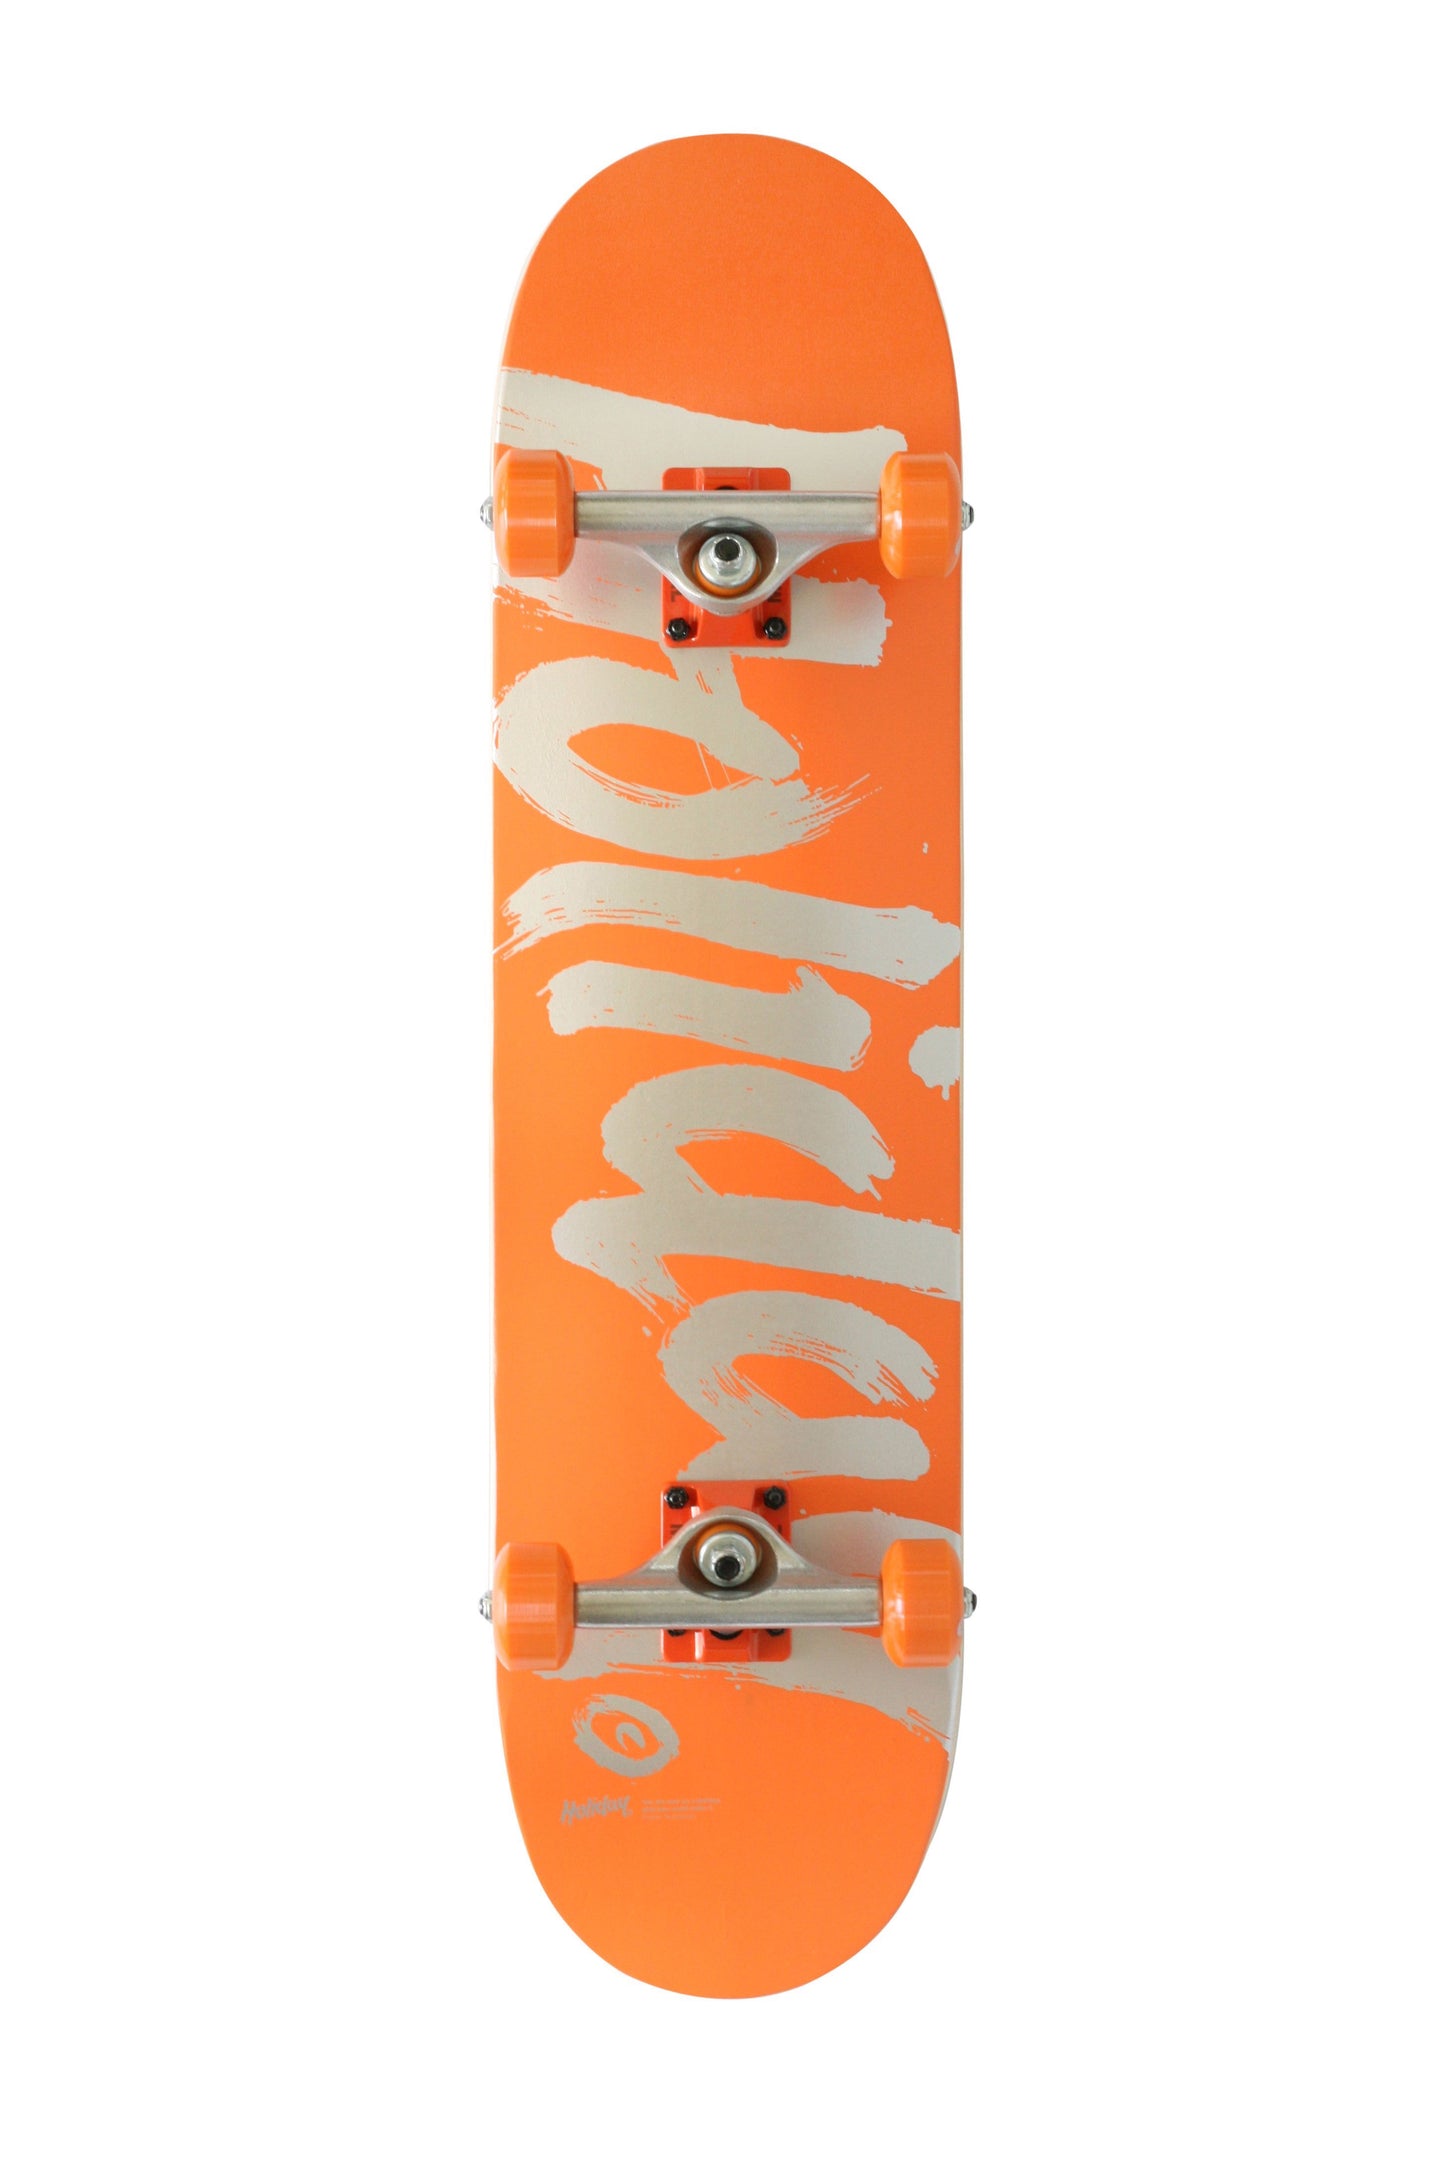 Holiday Skateboards - Foil Series "Orange"